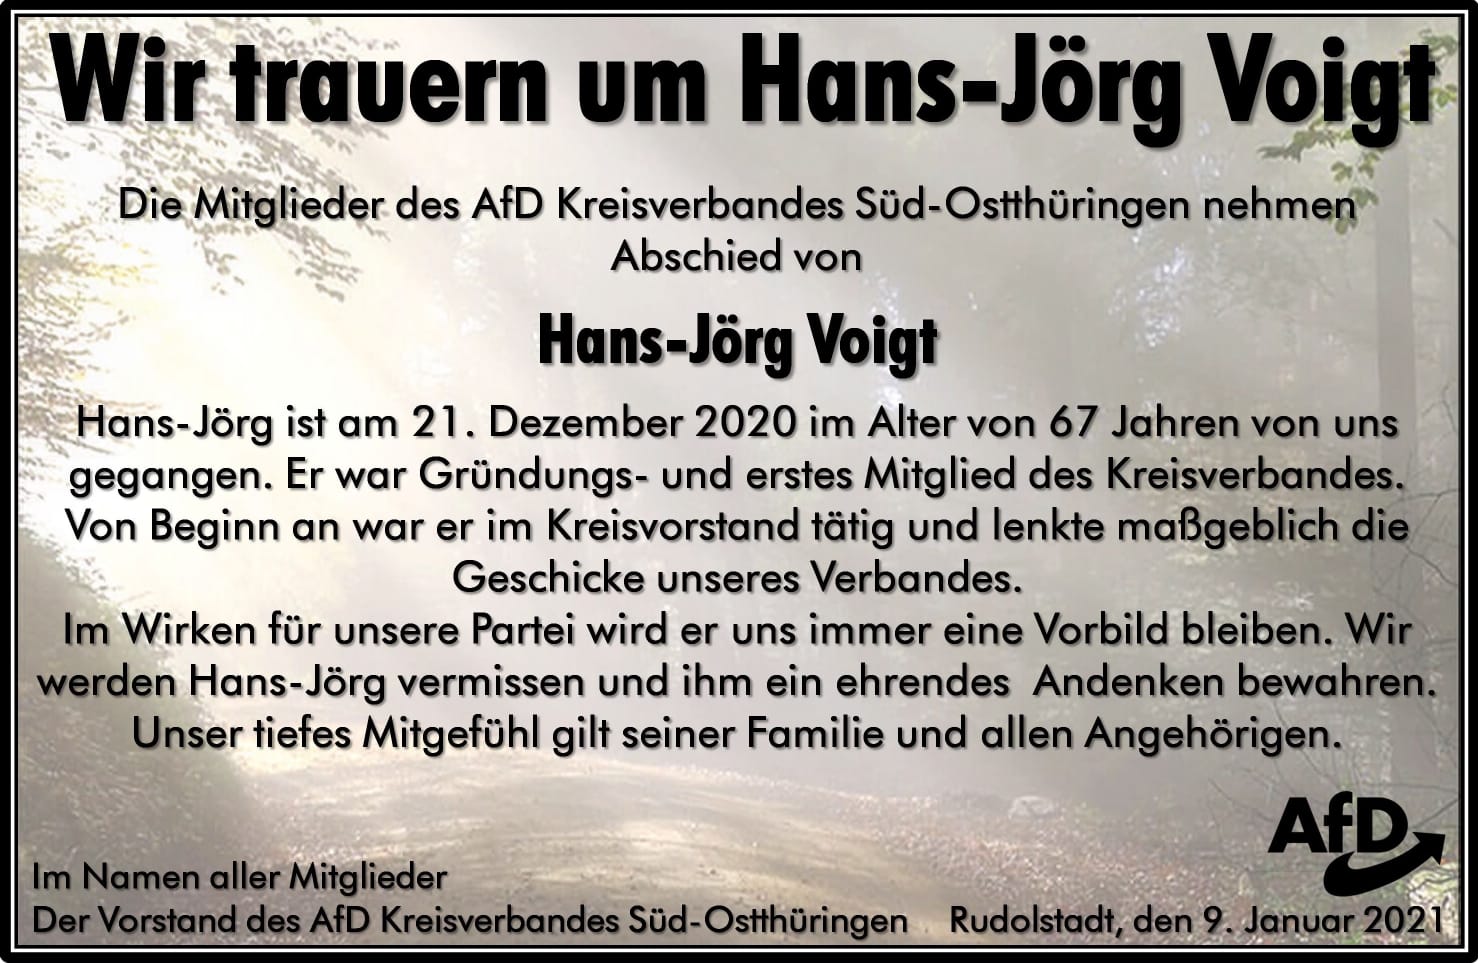 Traueranzeige Hans Jörg Voigt